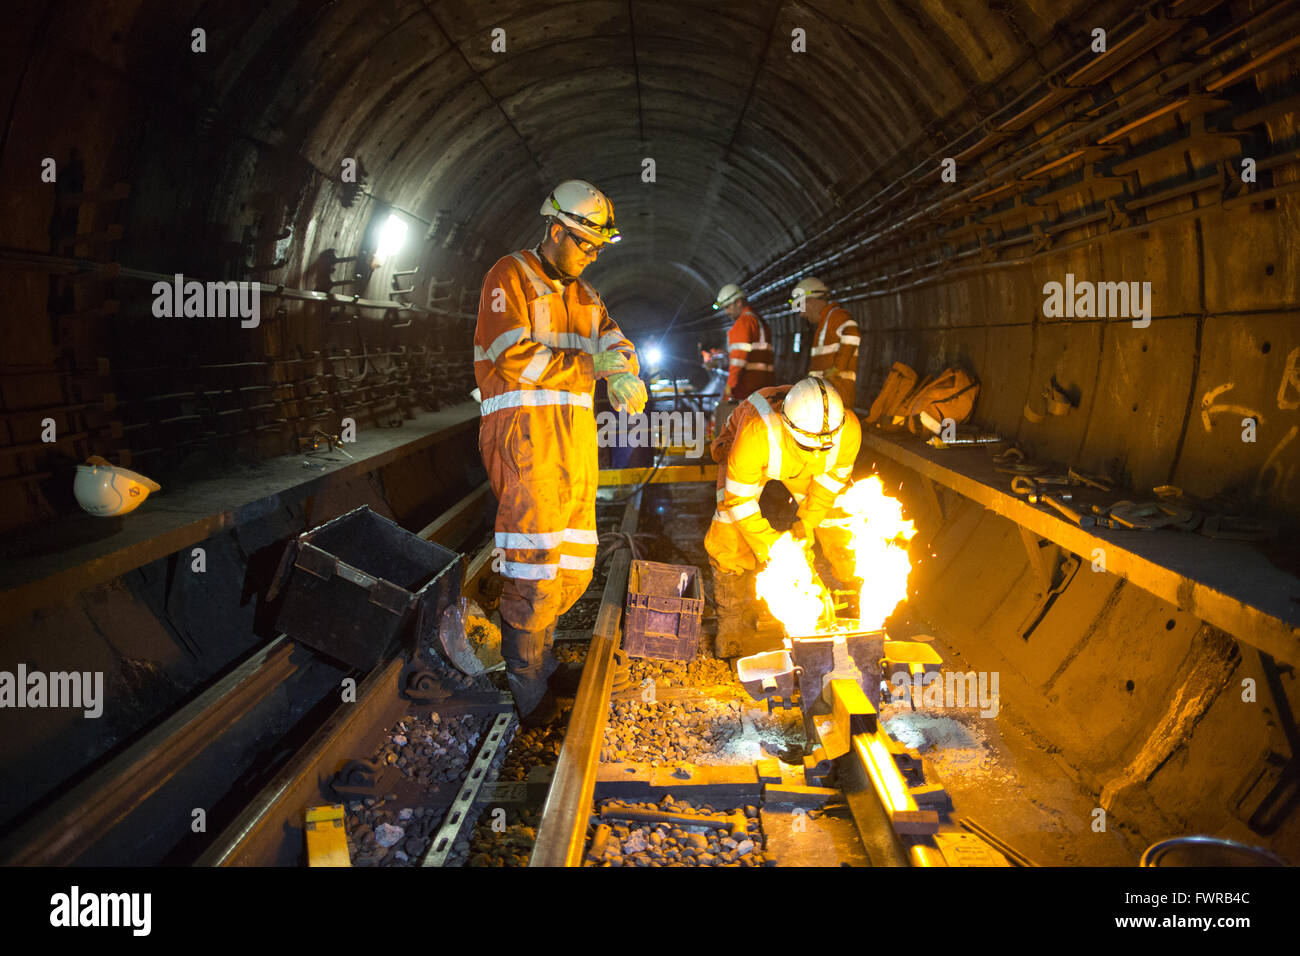 Souder les composants de la voie de remplacement ingénieurs ensemble à l'aide de soudure aluminothermique sur London Underground rail track, Londres, UK Banque D'Images